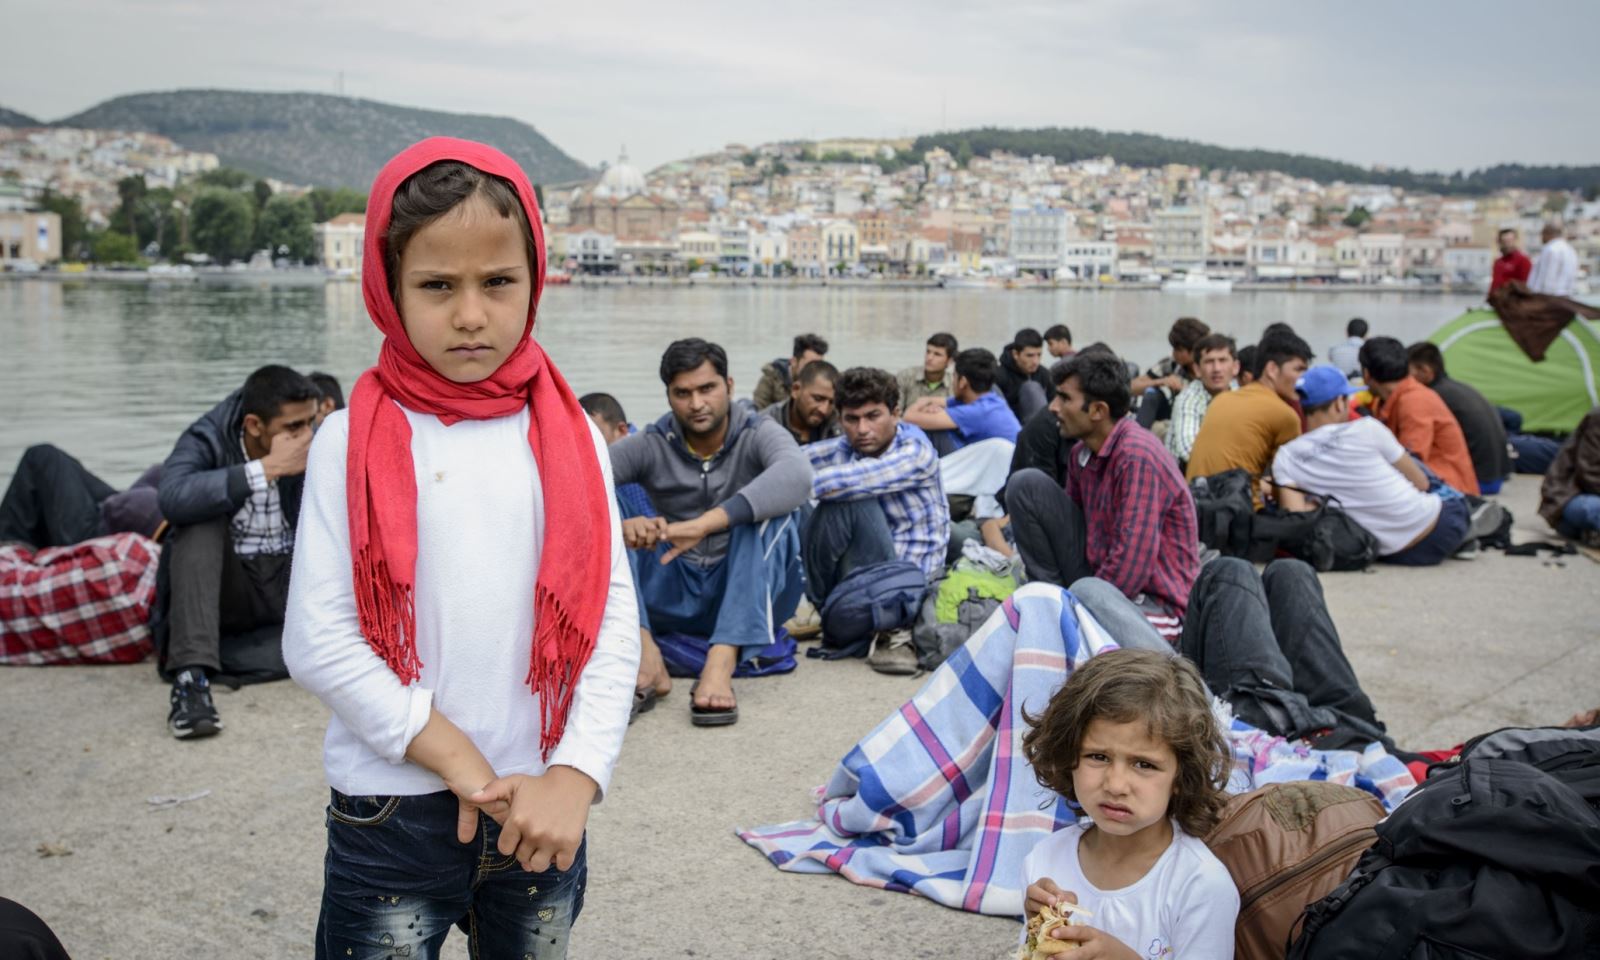 المفوضية تطلب إعادة توزيع لاجئين من اليونان في أوروبا بنهاية 2017